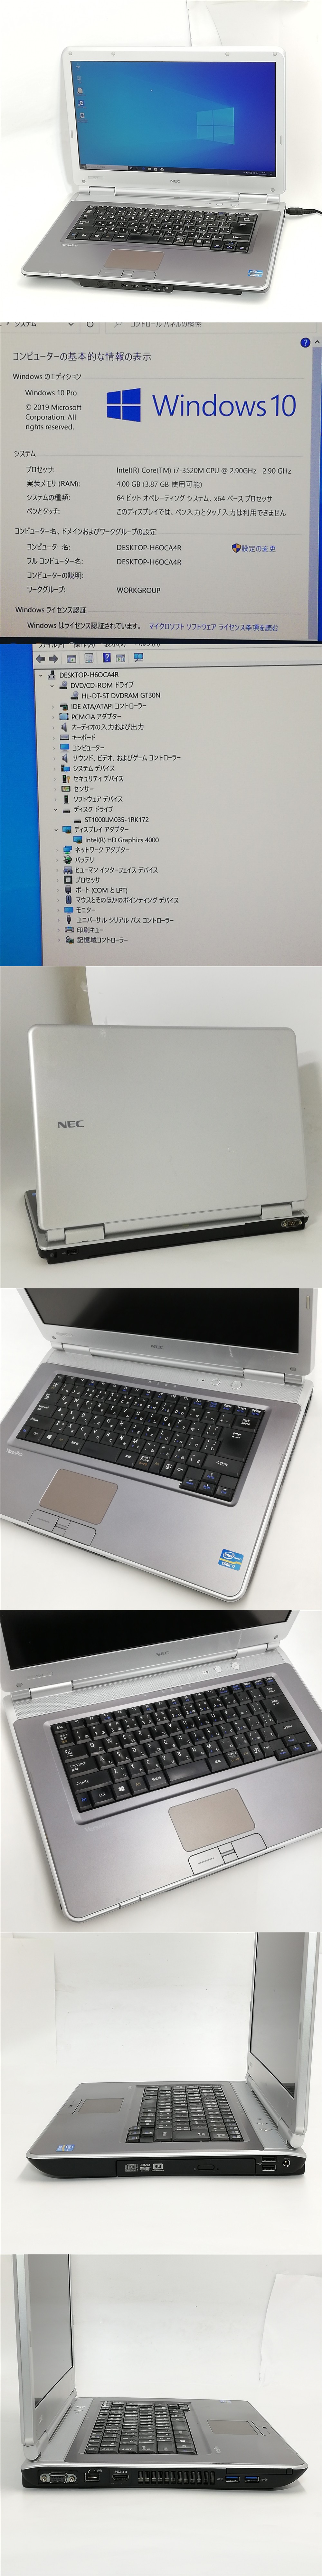 1円～ ノートパソコンフルHD 15.6型NEC PC-VK29HDZDF 中古動作良品第3